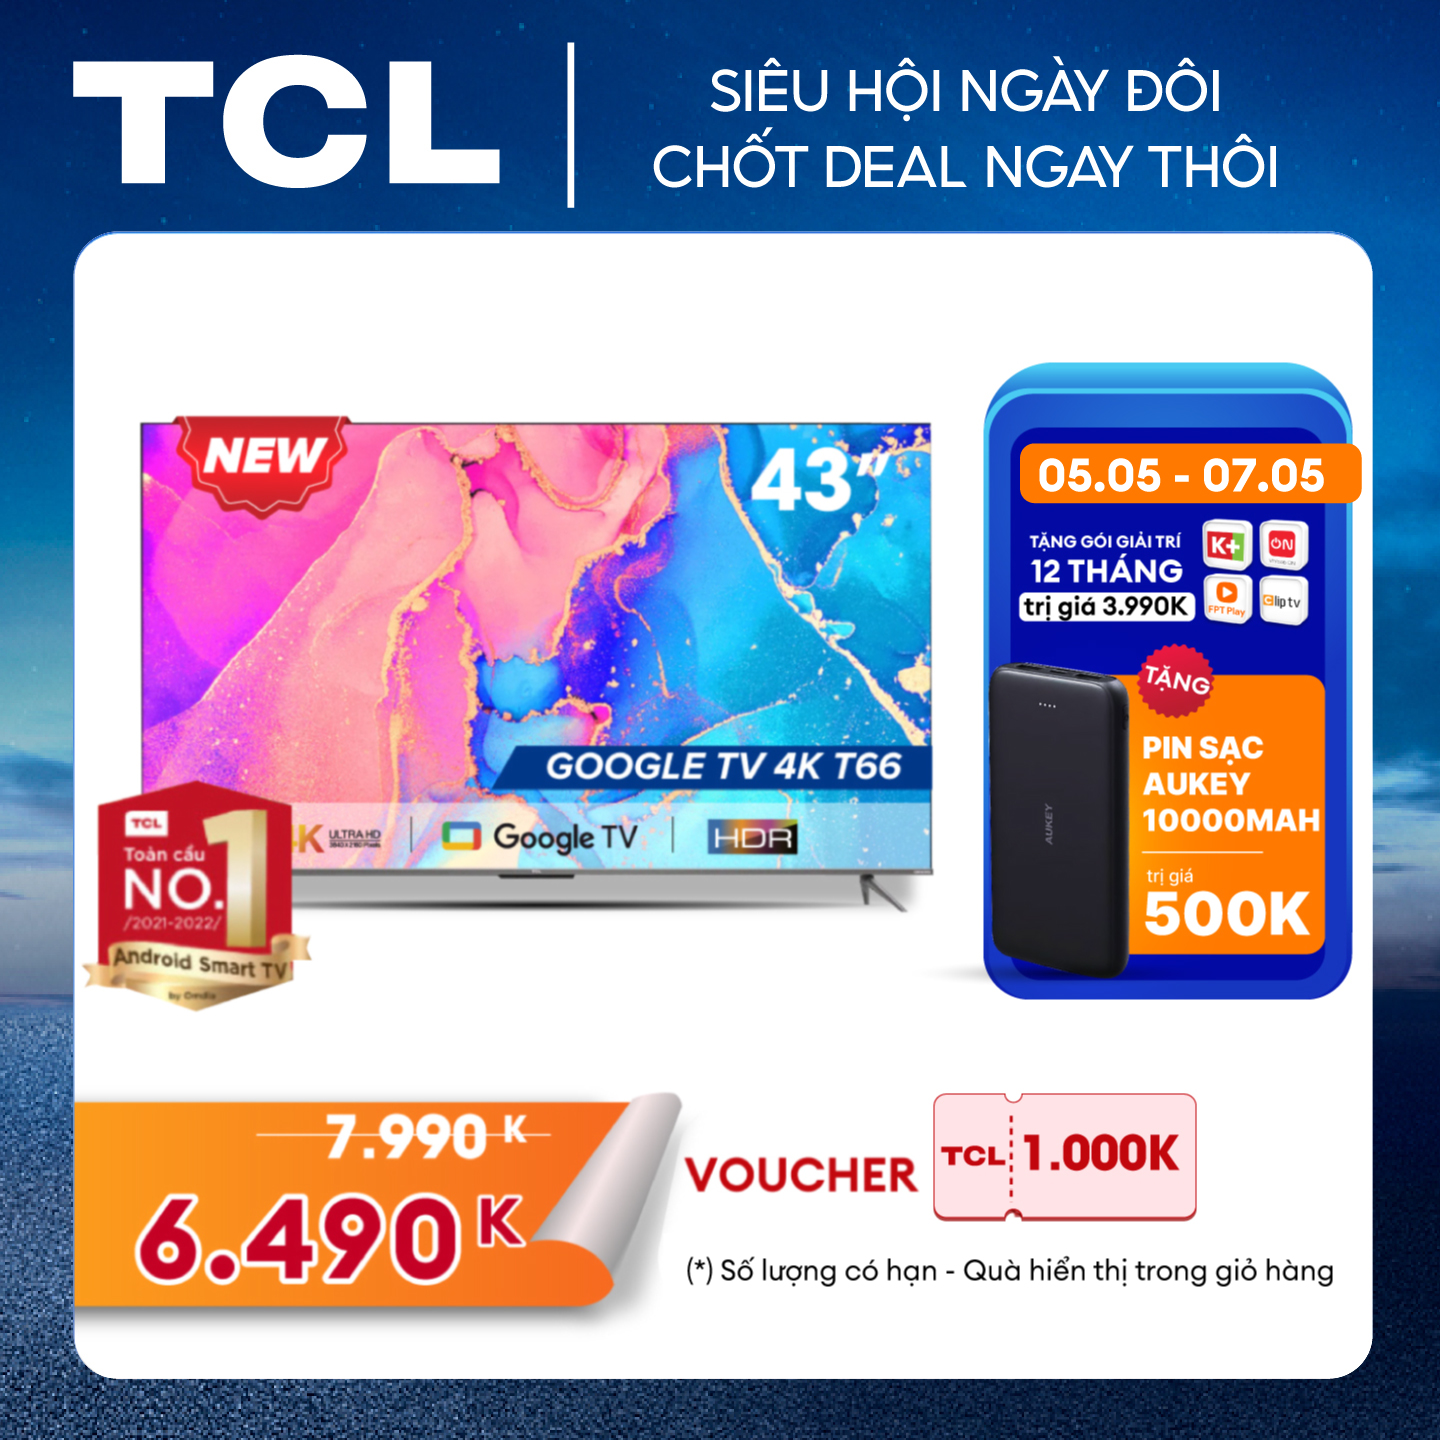 GOOGLE Tivi 43'' 4K HDR - TCL 43T66 - Gam Màu Rộng Dolby Audio - Tivi Giá Rẻ Chất Lượng -Hàng chính hãng